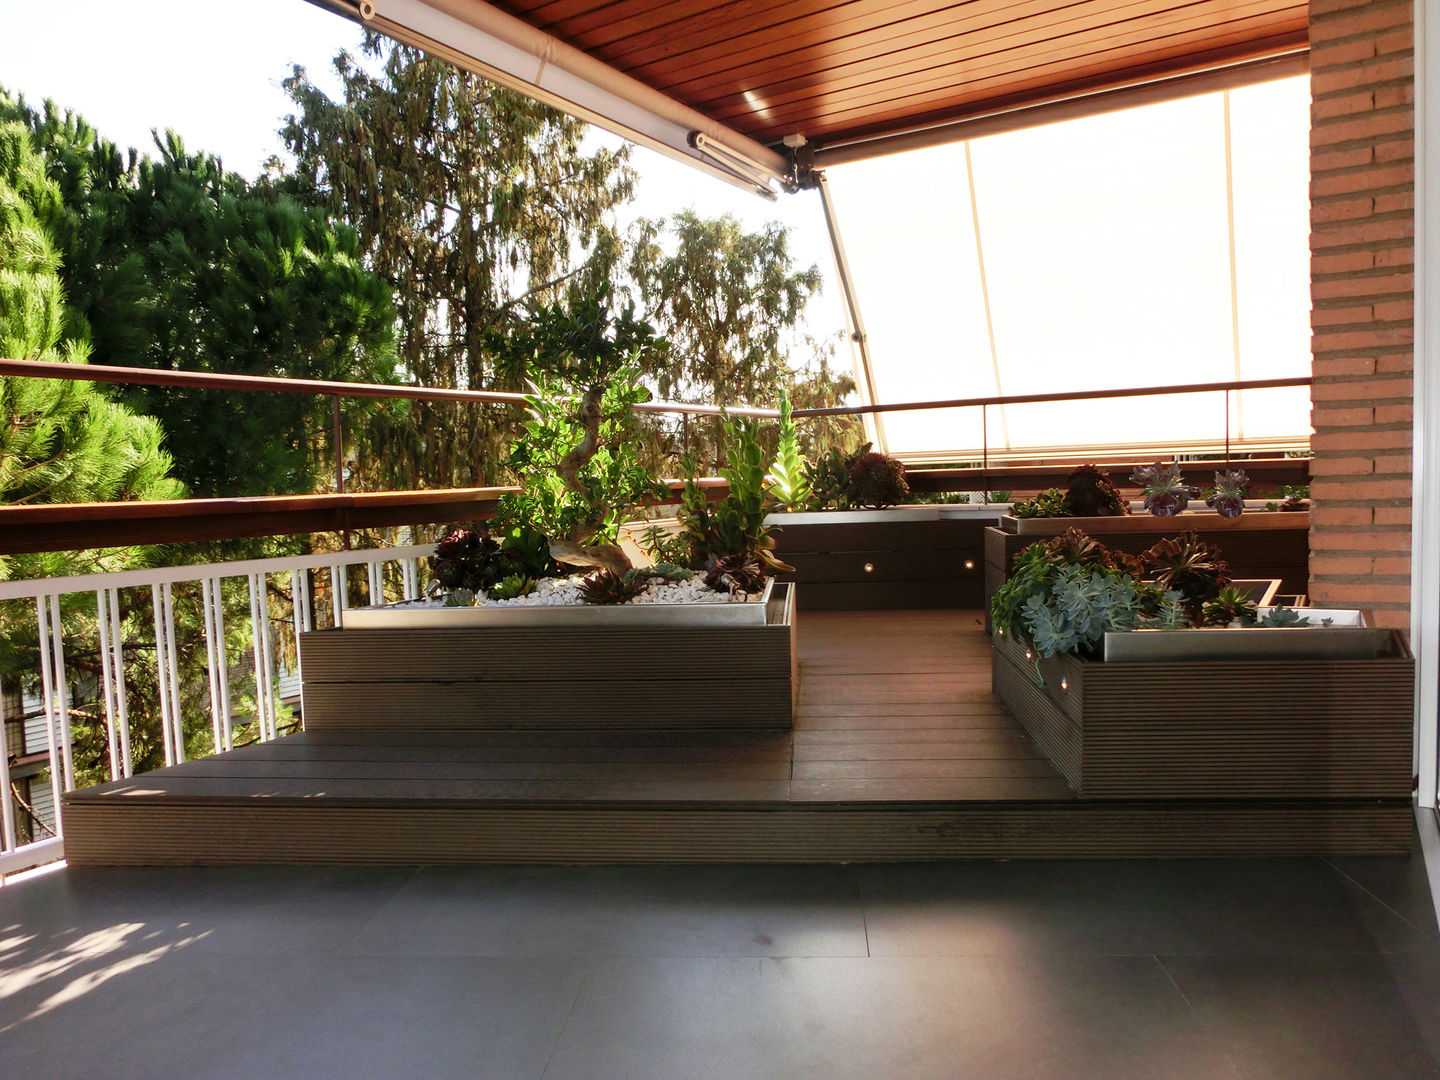 Terraza. Daifuku Designs Balcones y terrazas minimalistas terrace,platform,potted plants